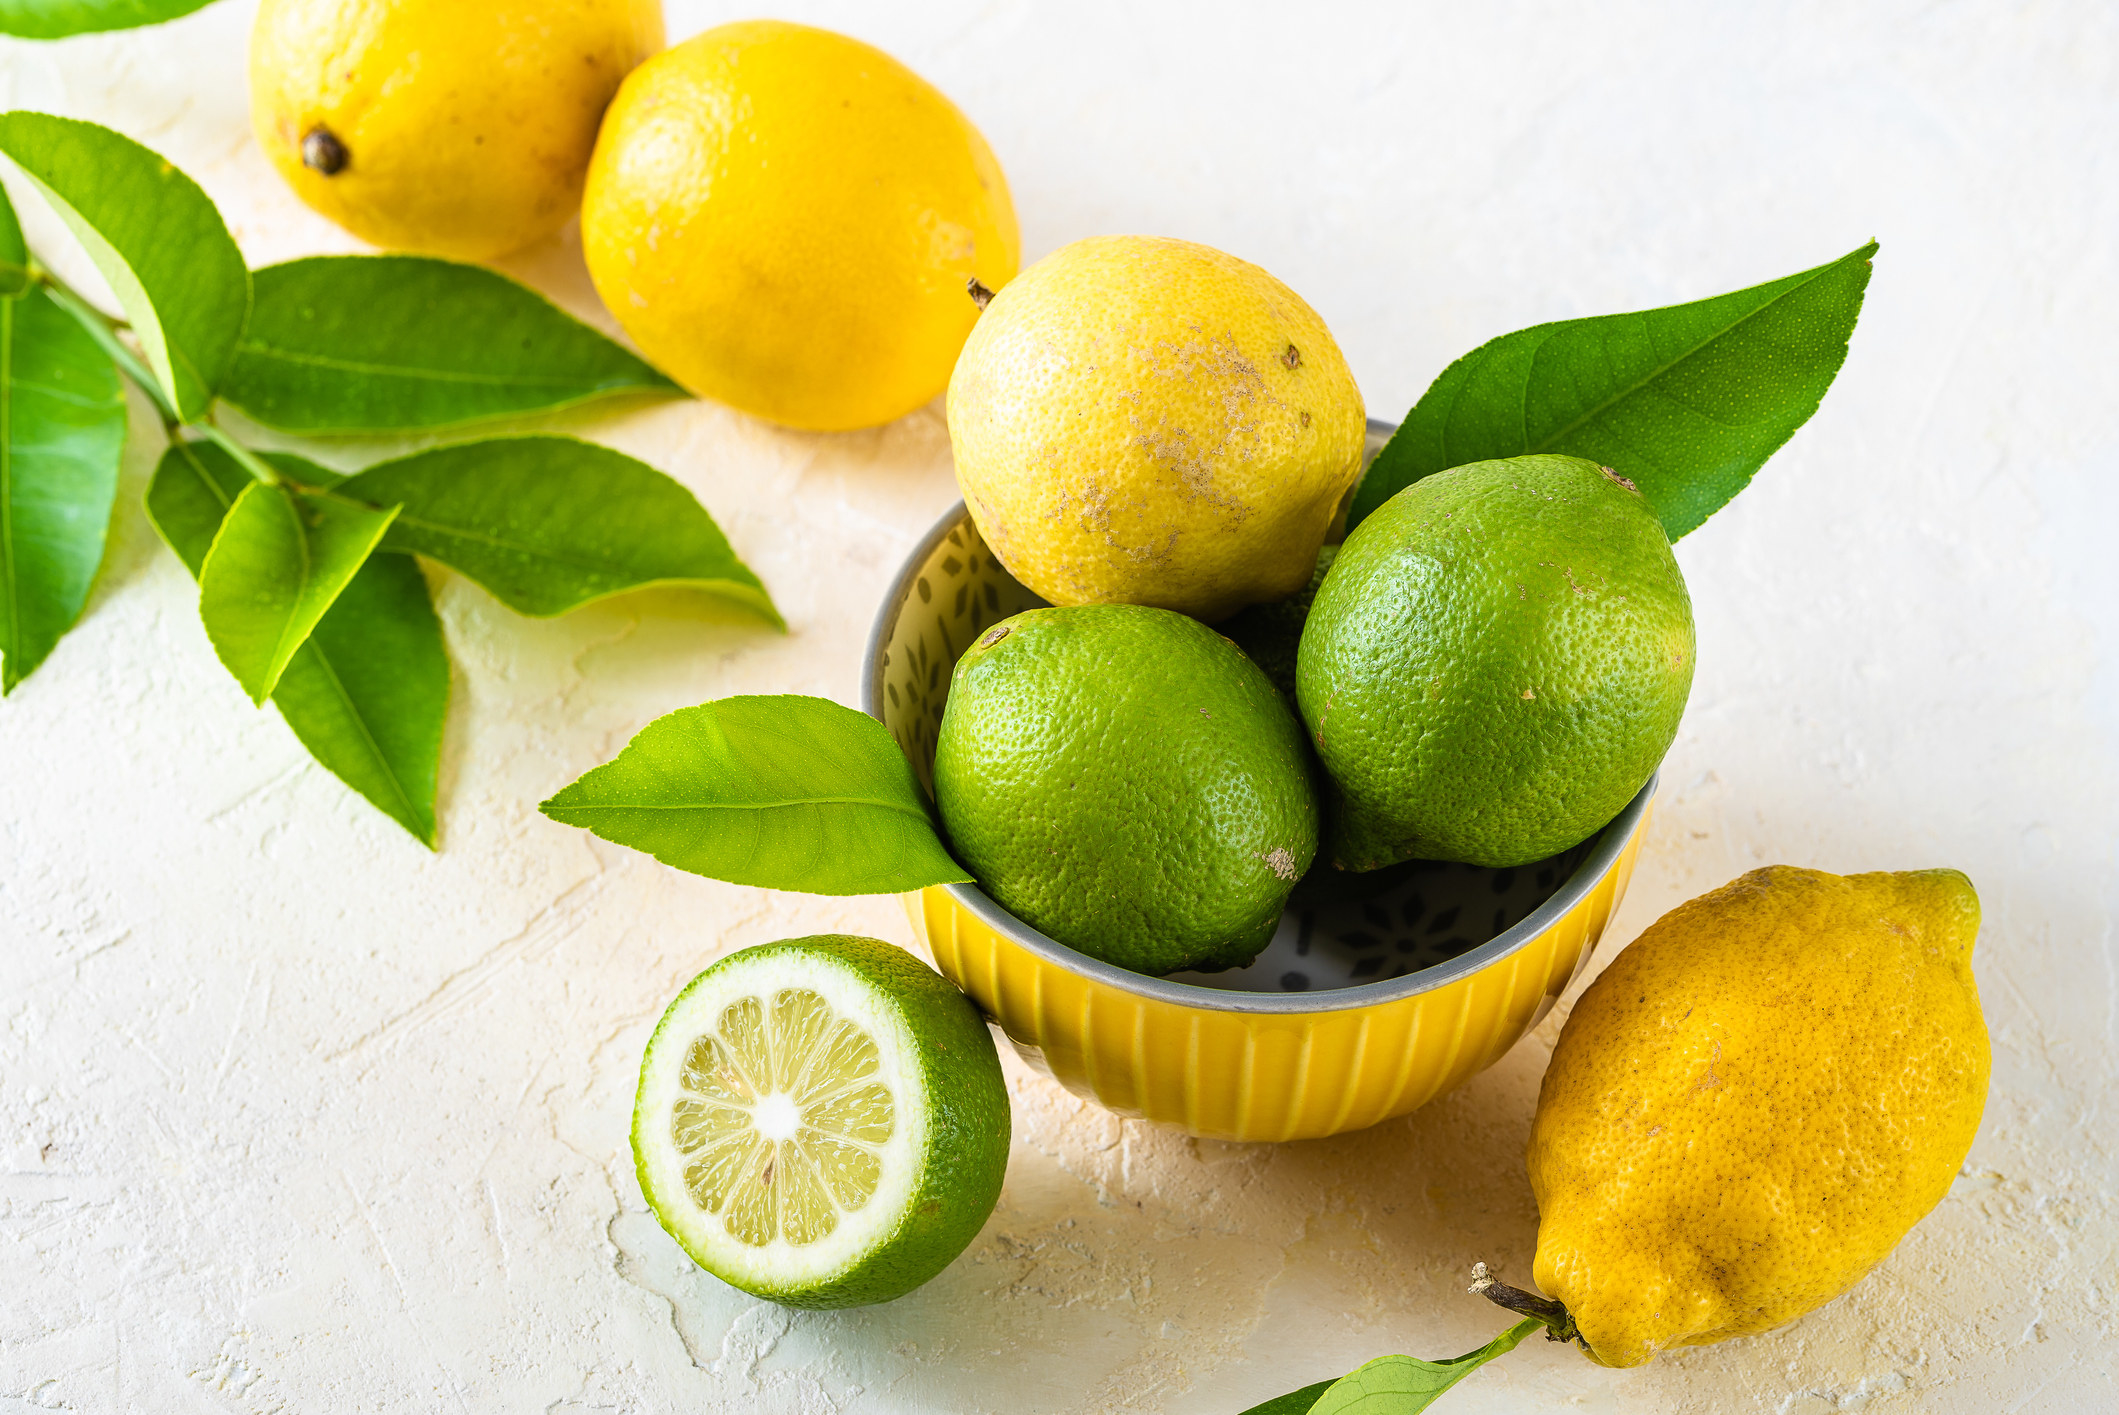 a bowl of lemons and limes